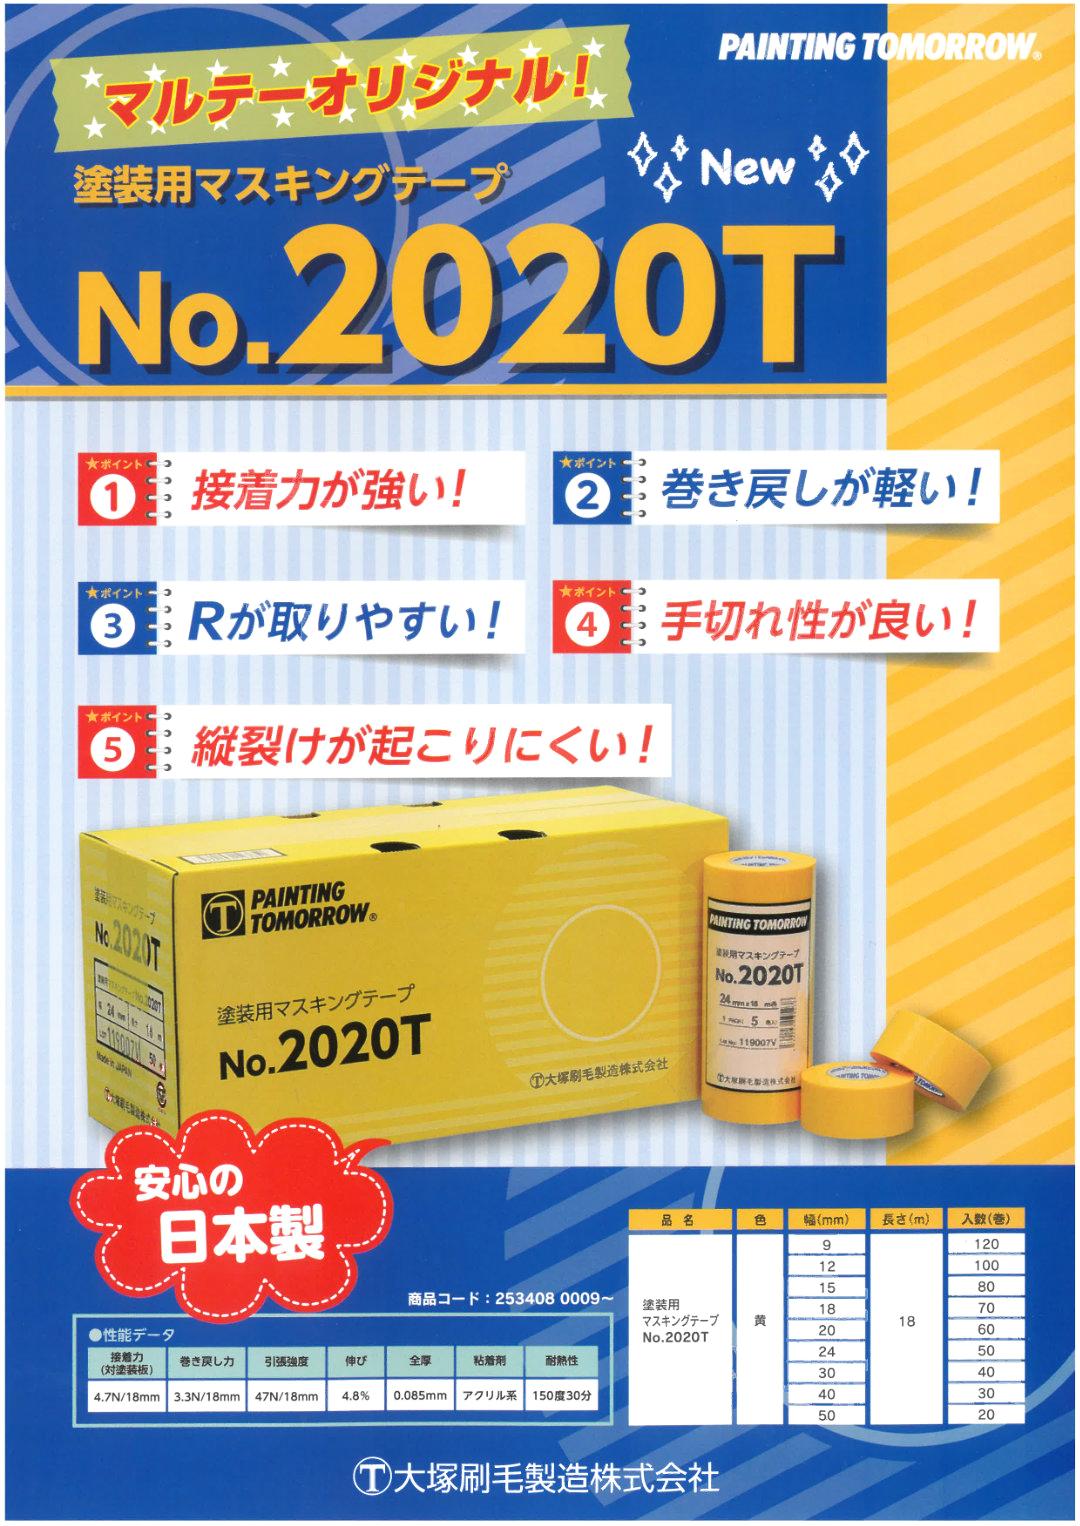 No.2020T 塗装用マスキングテープ 黄 18mm 70巻入り 2箱 セット 【送料無料】画像